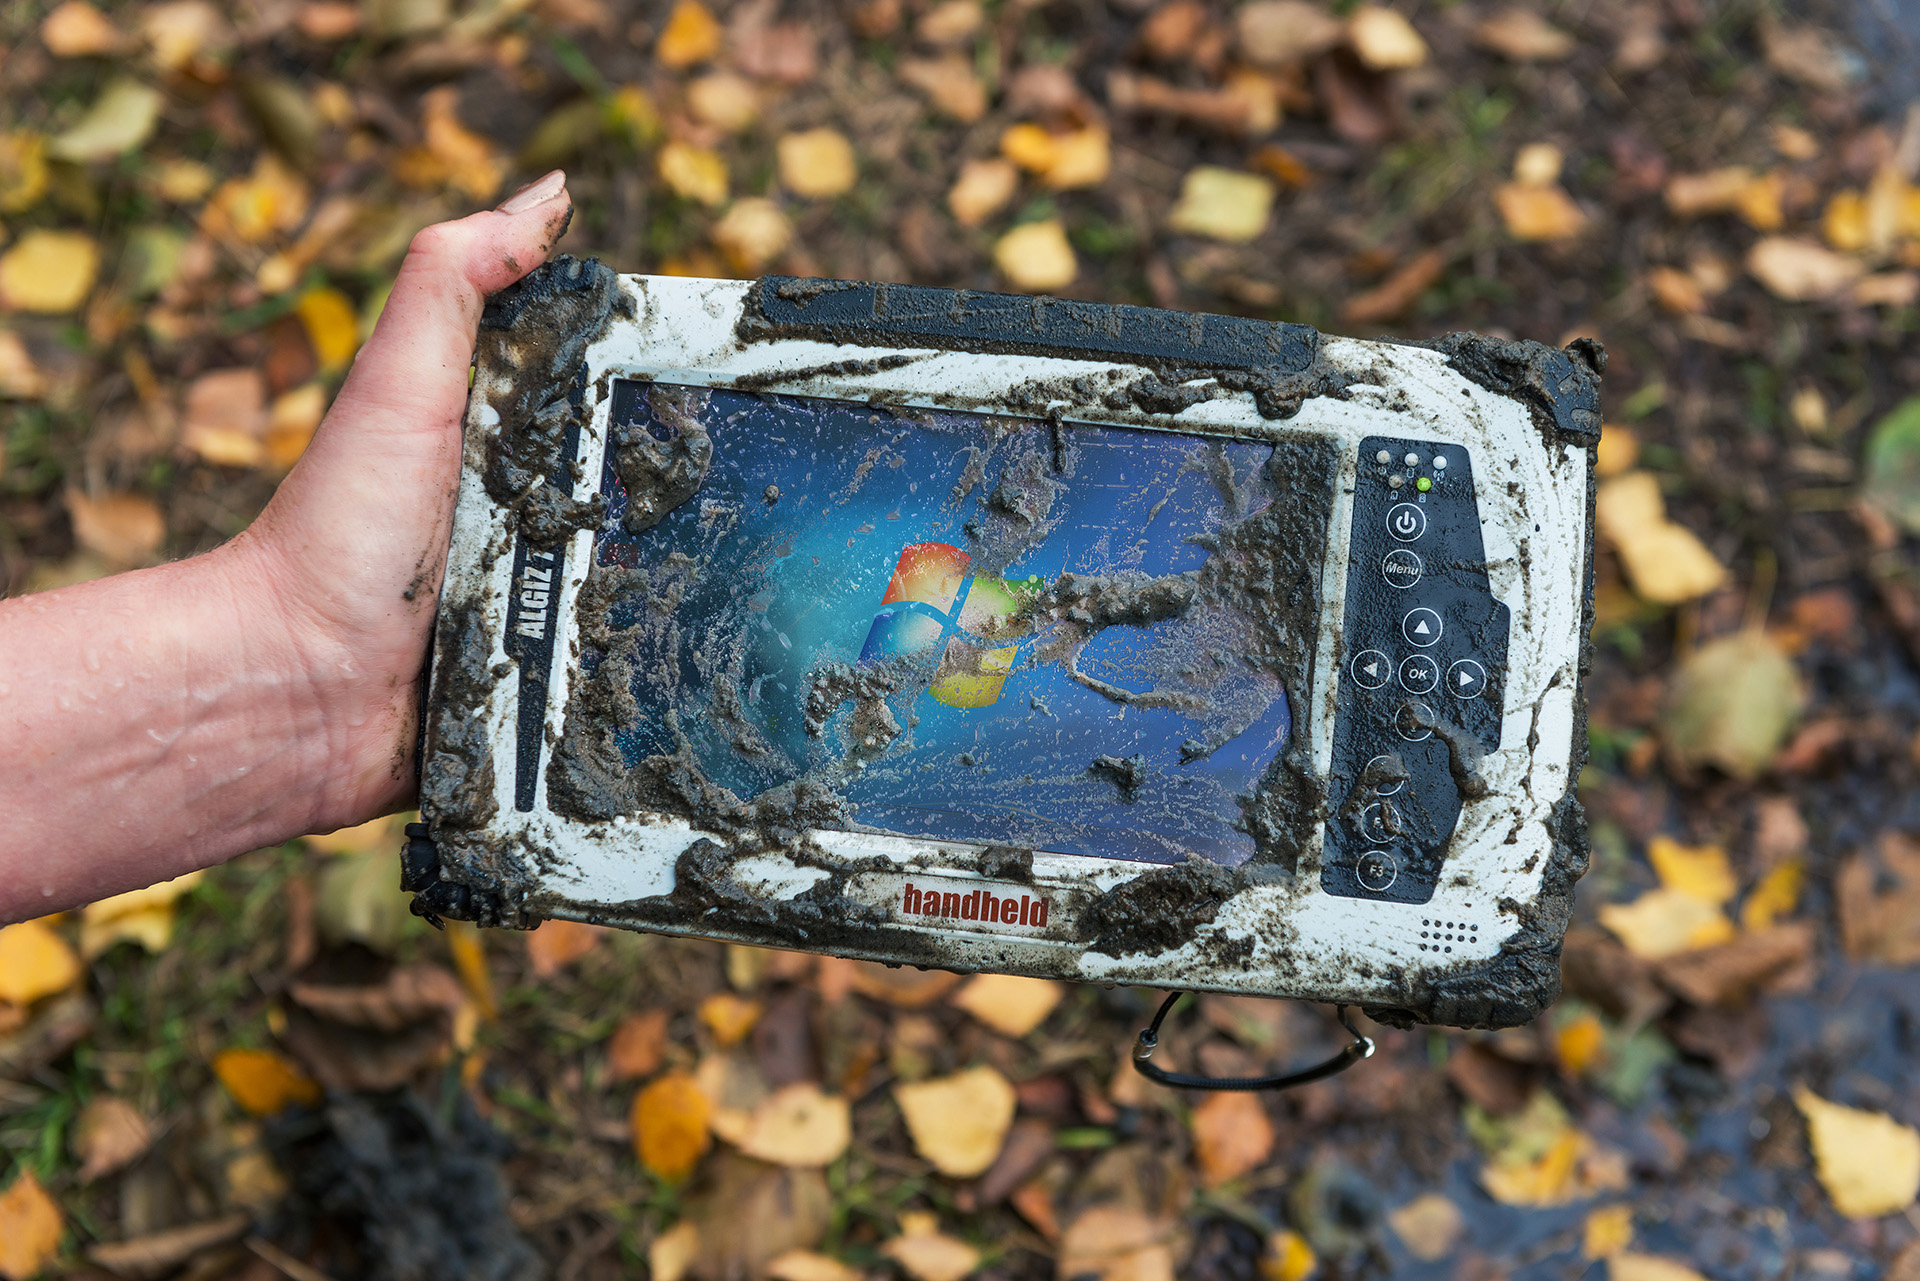 Algiz-7-rugged-tablet-handheld-outdoors-in-mud-IP65.jpg